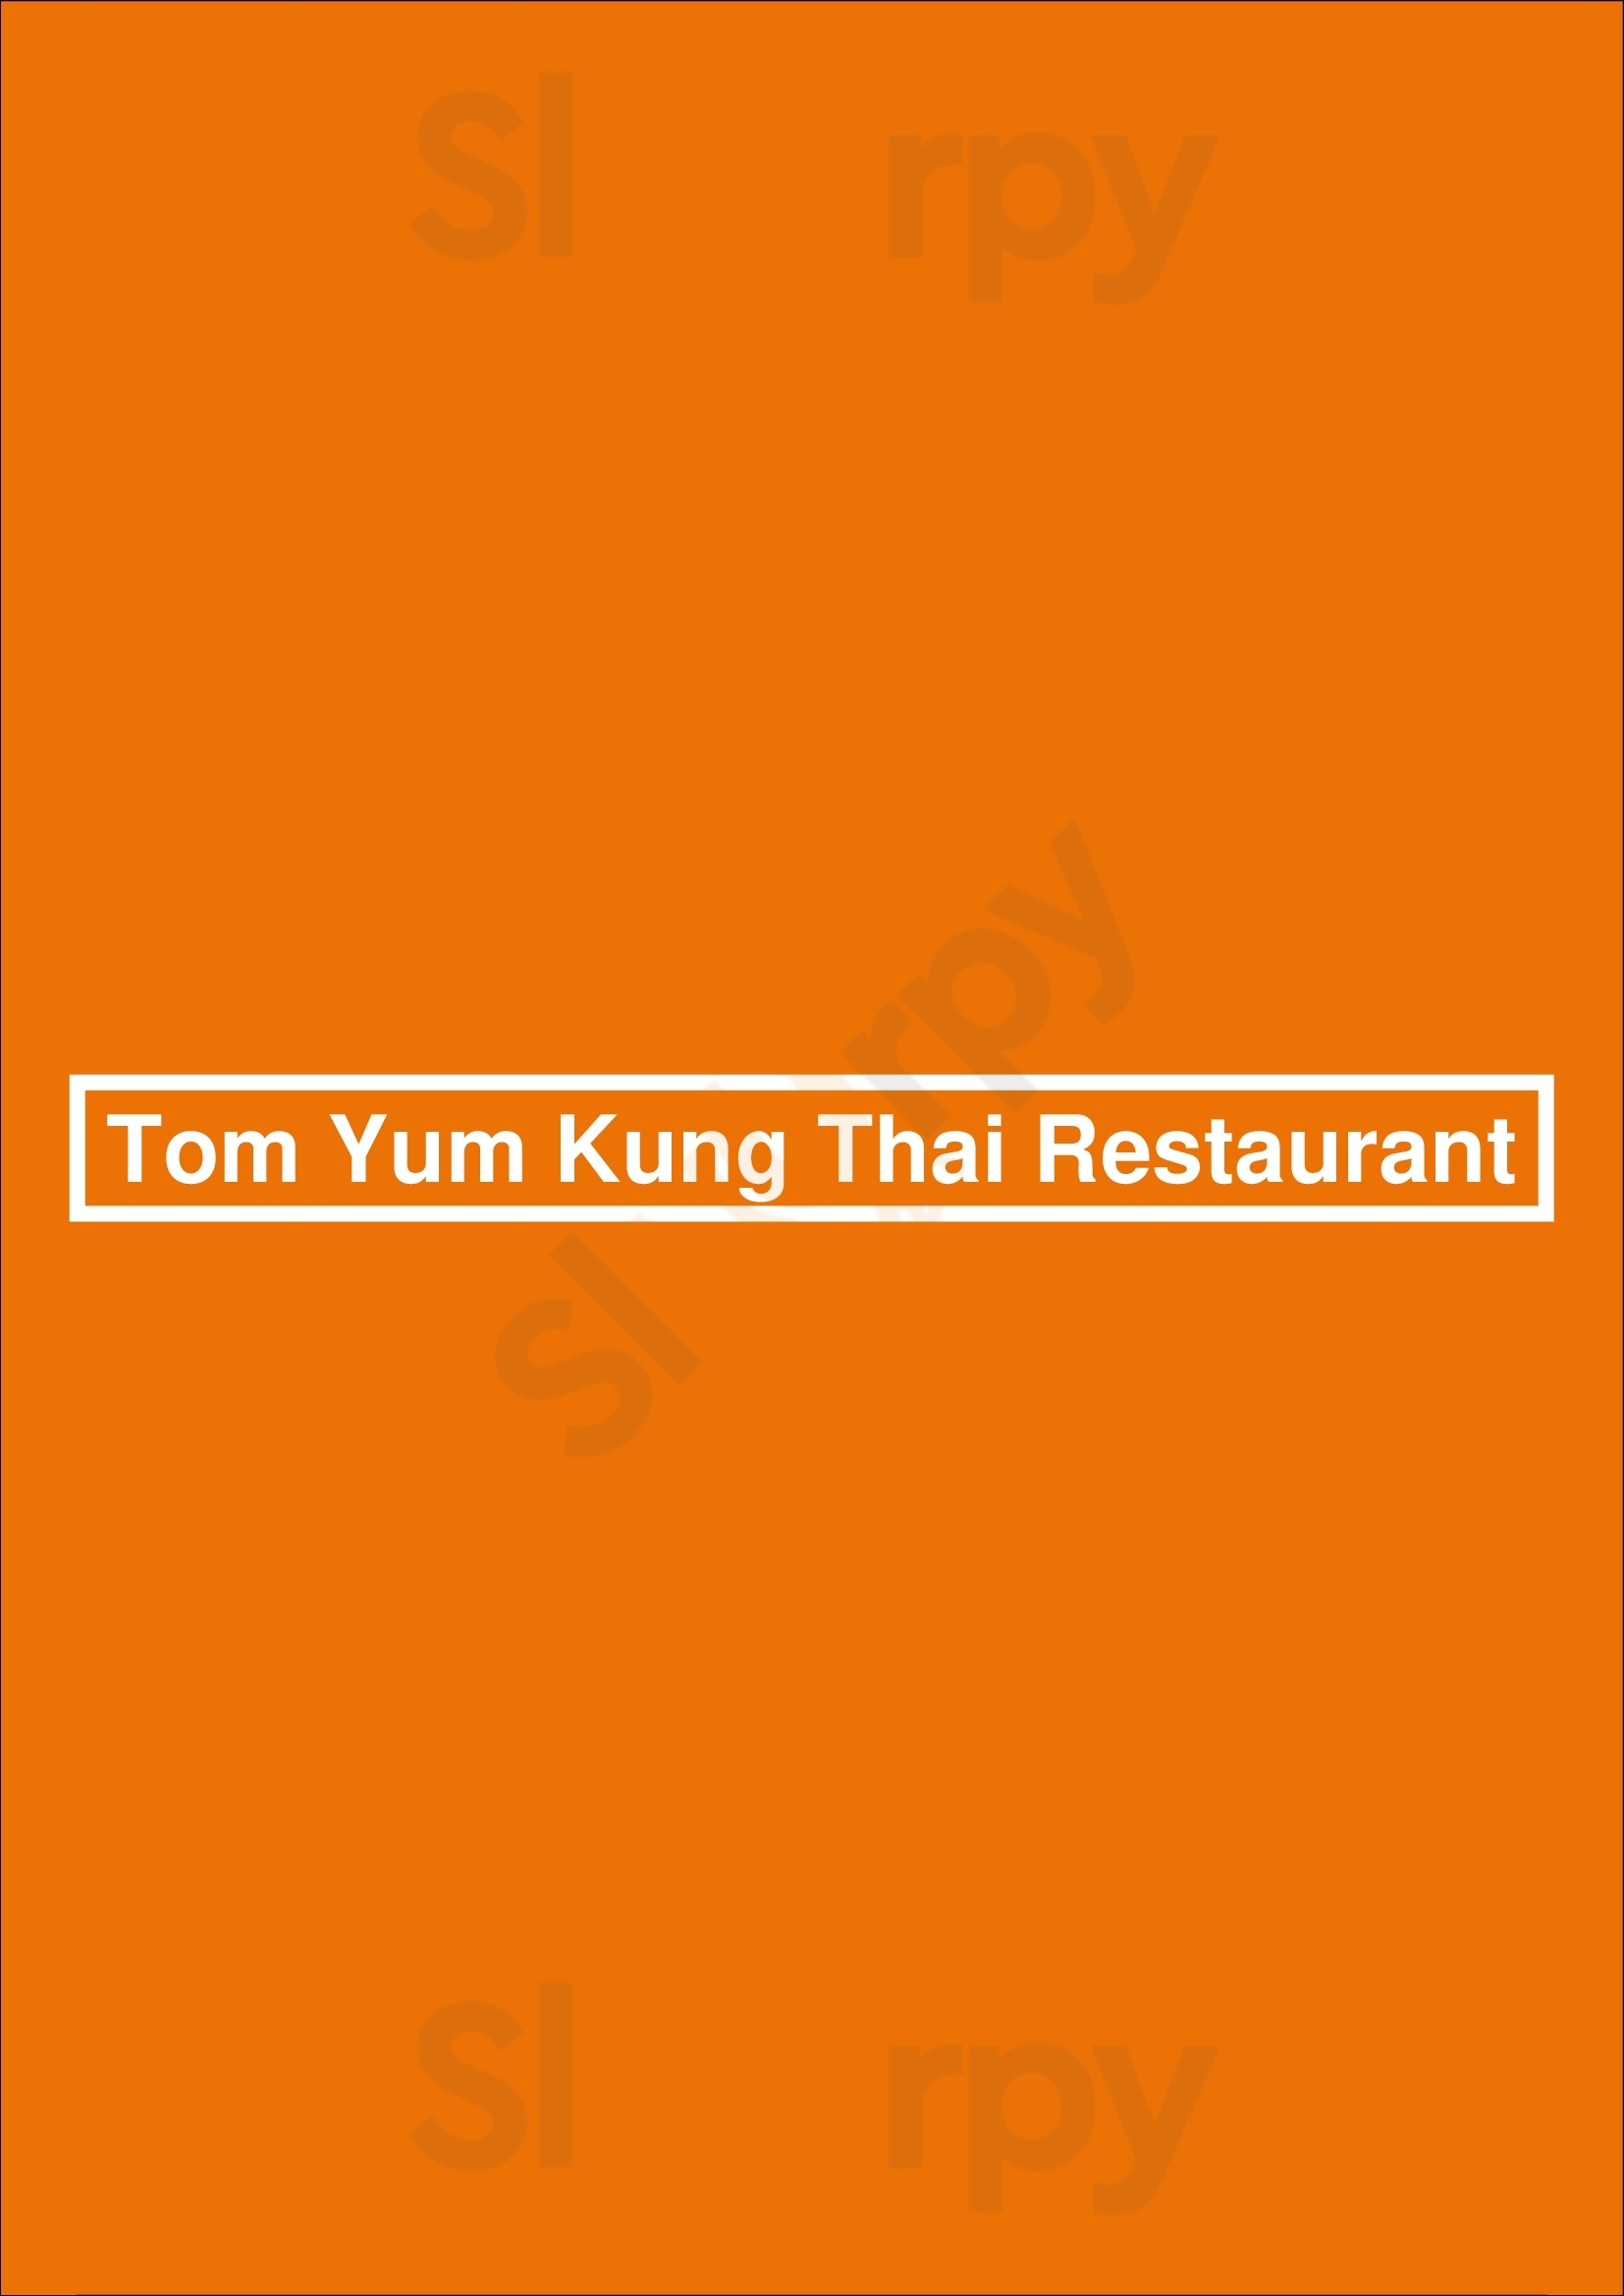 Tom Yum Kung Thai Restaurant Amsterdam Menu - 1